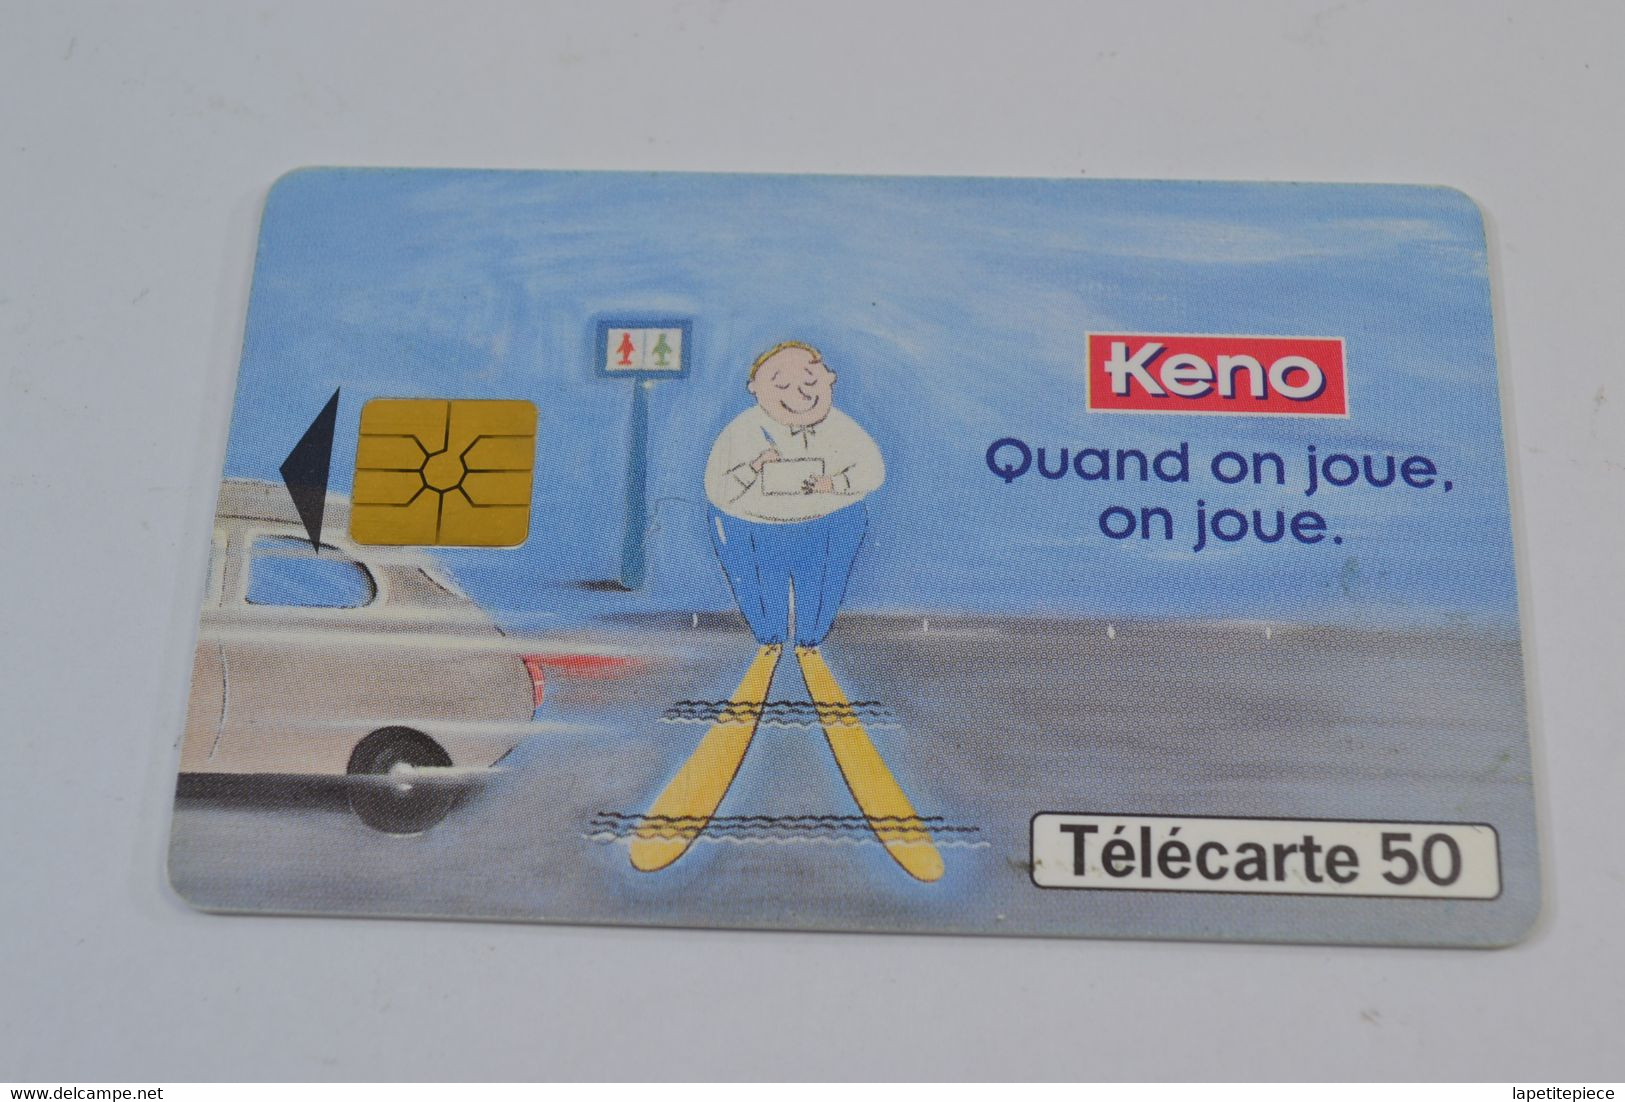 (A) Télécarte Carte Téléphonique 50 Keno Quand On Joue, On Joue. - Spiele